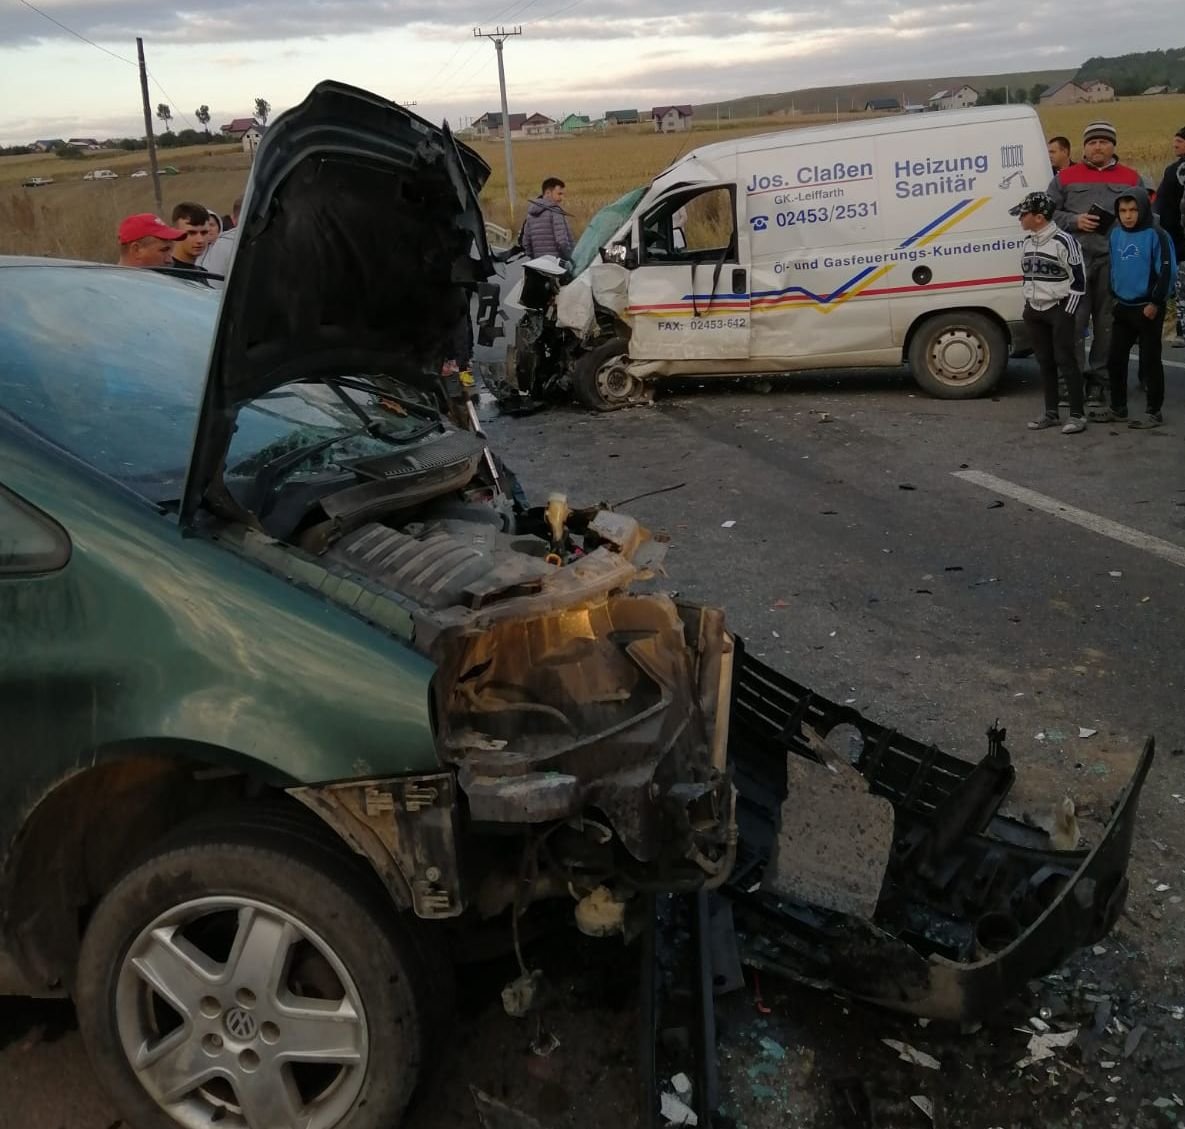  (FOTO) Iaşi: Accident cu patru victime. Un autobuz şi două maşini, implicate în coliziune